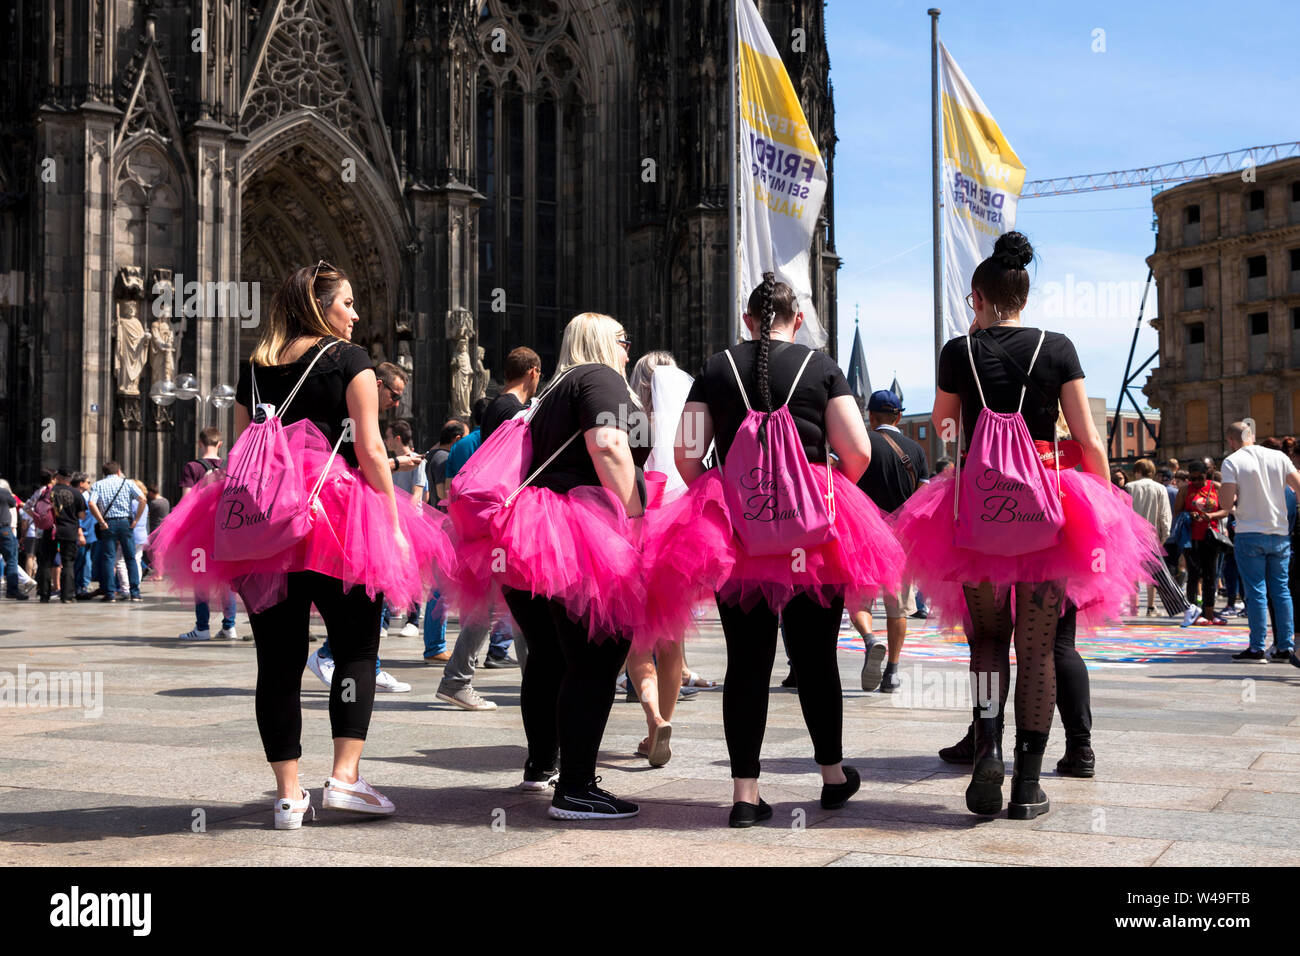 Despedida de Soltera, mujeres en faldas de tul rosa en frente de la catedral de Colonia, Alemania. Junggesellinnenabschied, Frauen en pinkfarbenen Tuellroec Foto de stock